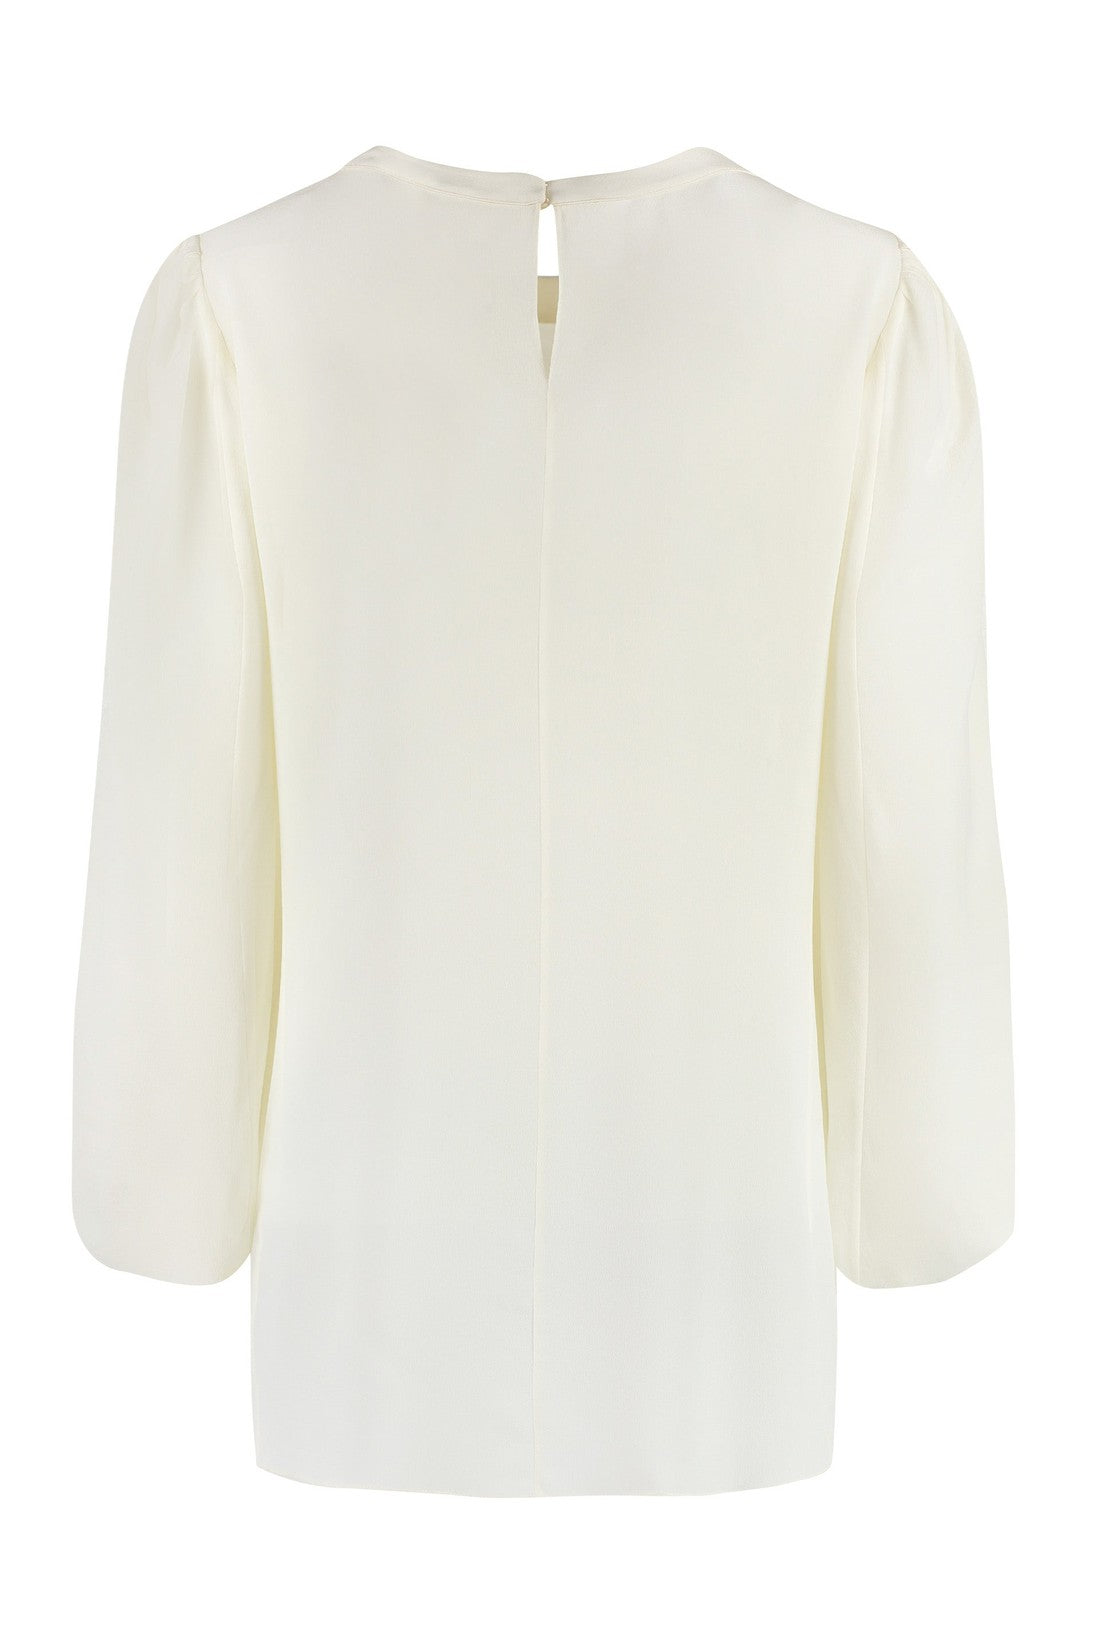 Chloé-OUTLET-SALE-Silk blouse-ARCHIVIST